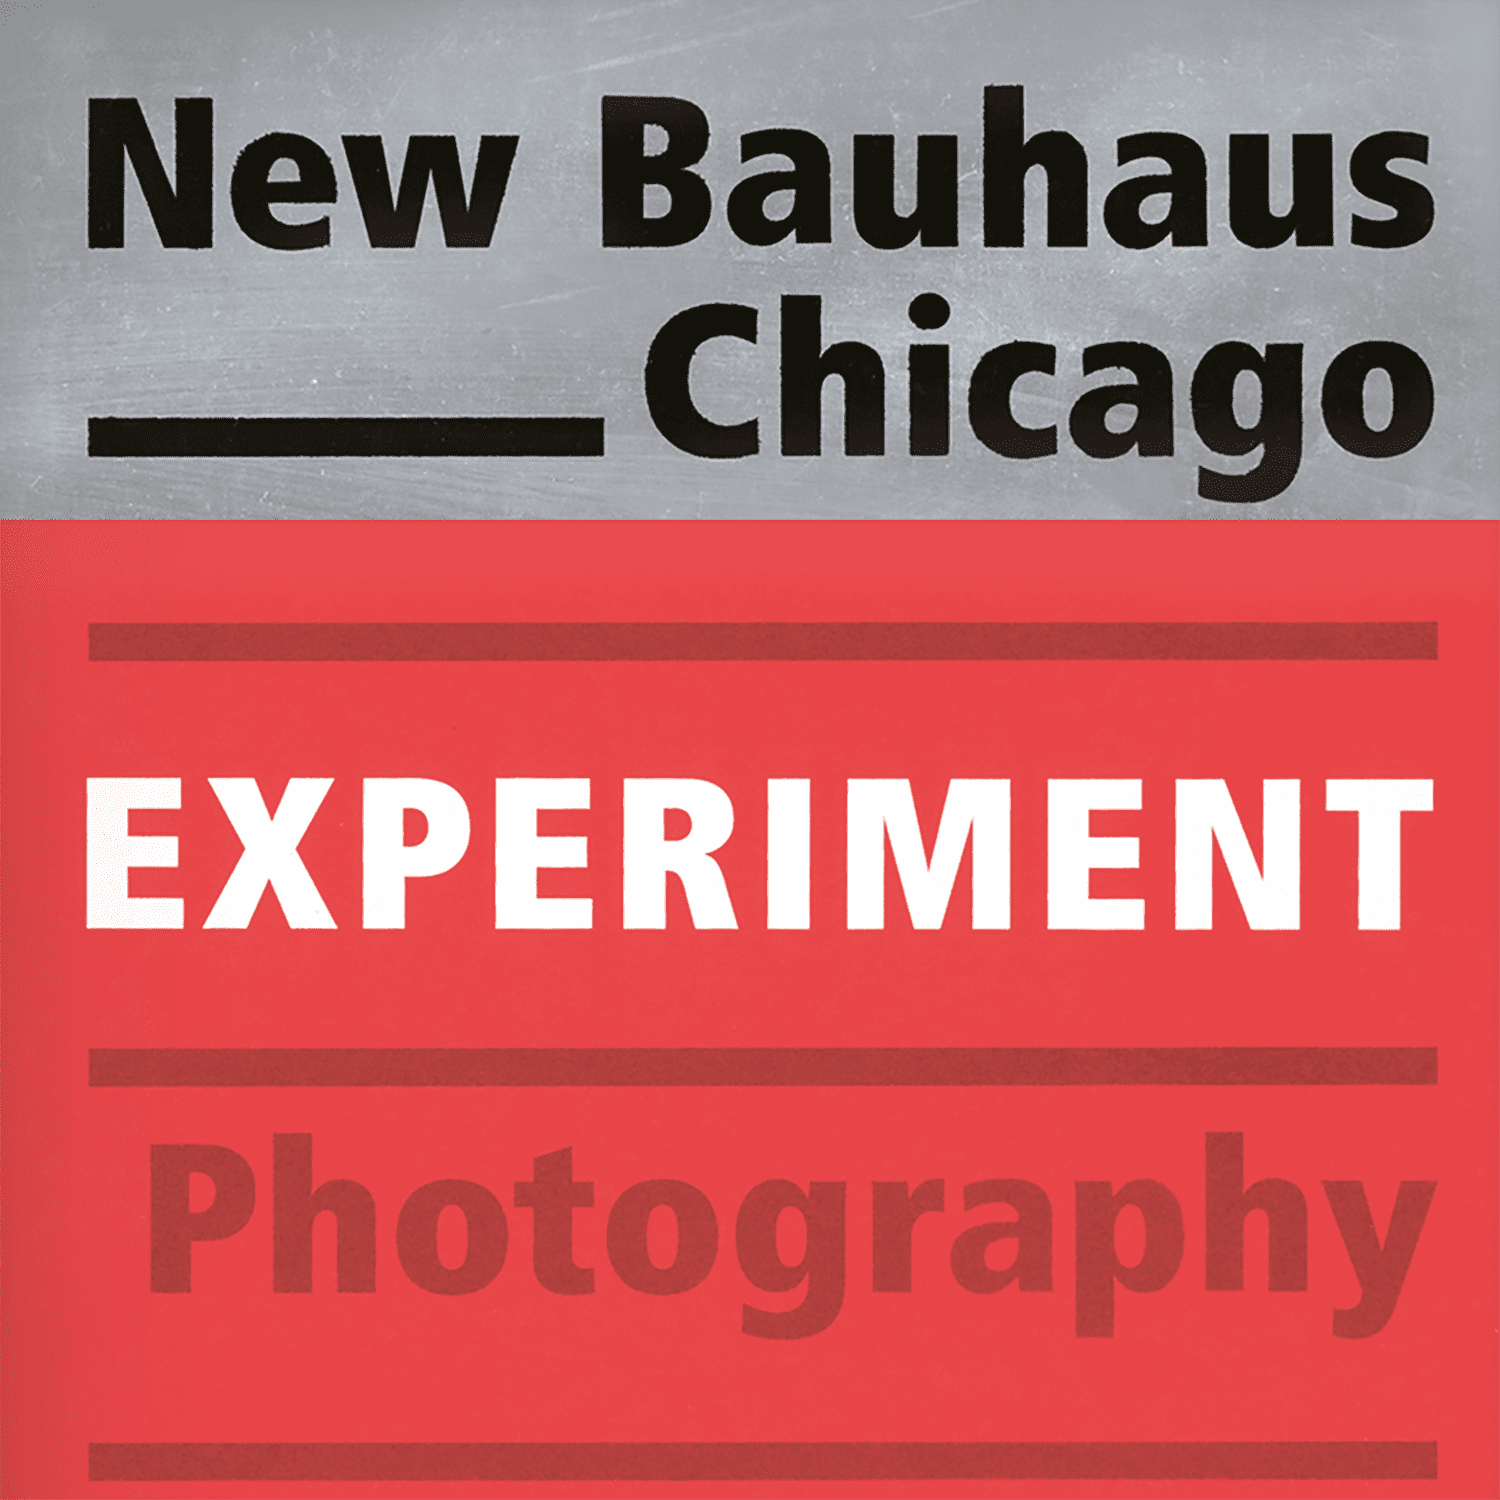 Imagen de Nueva Bauhaus Chicago - Fotografía de Experimentos